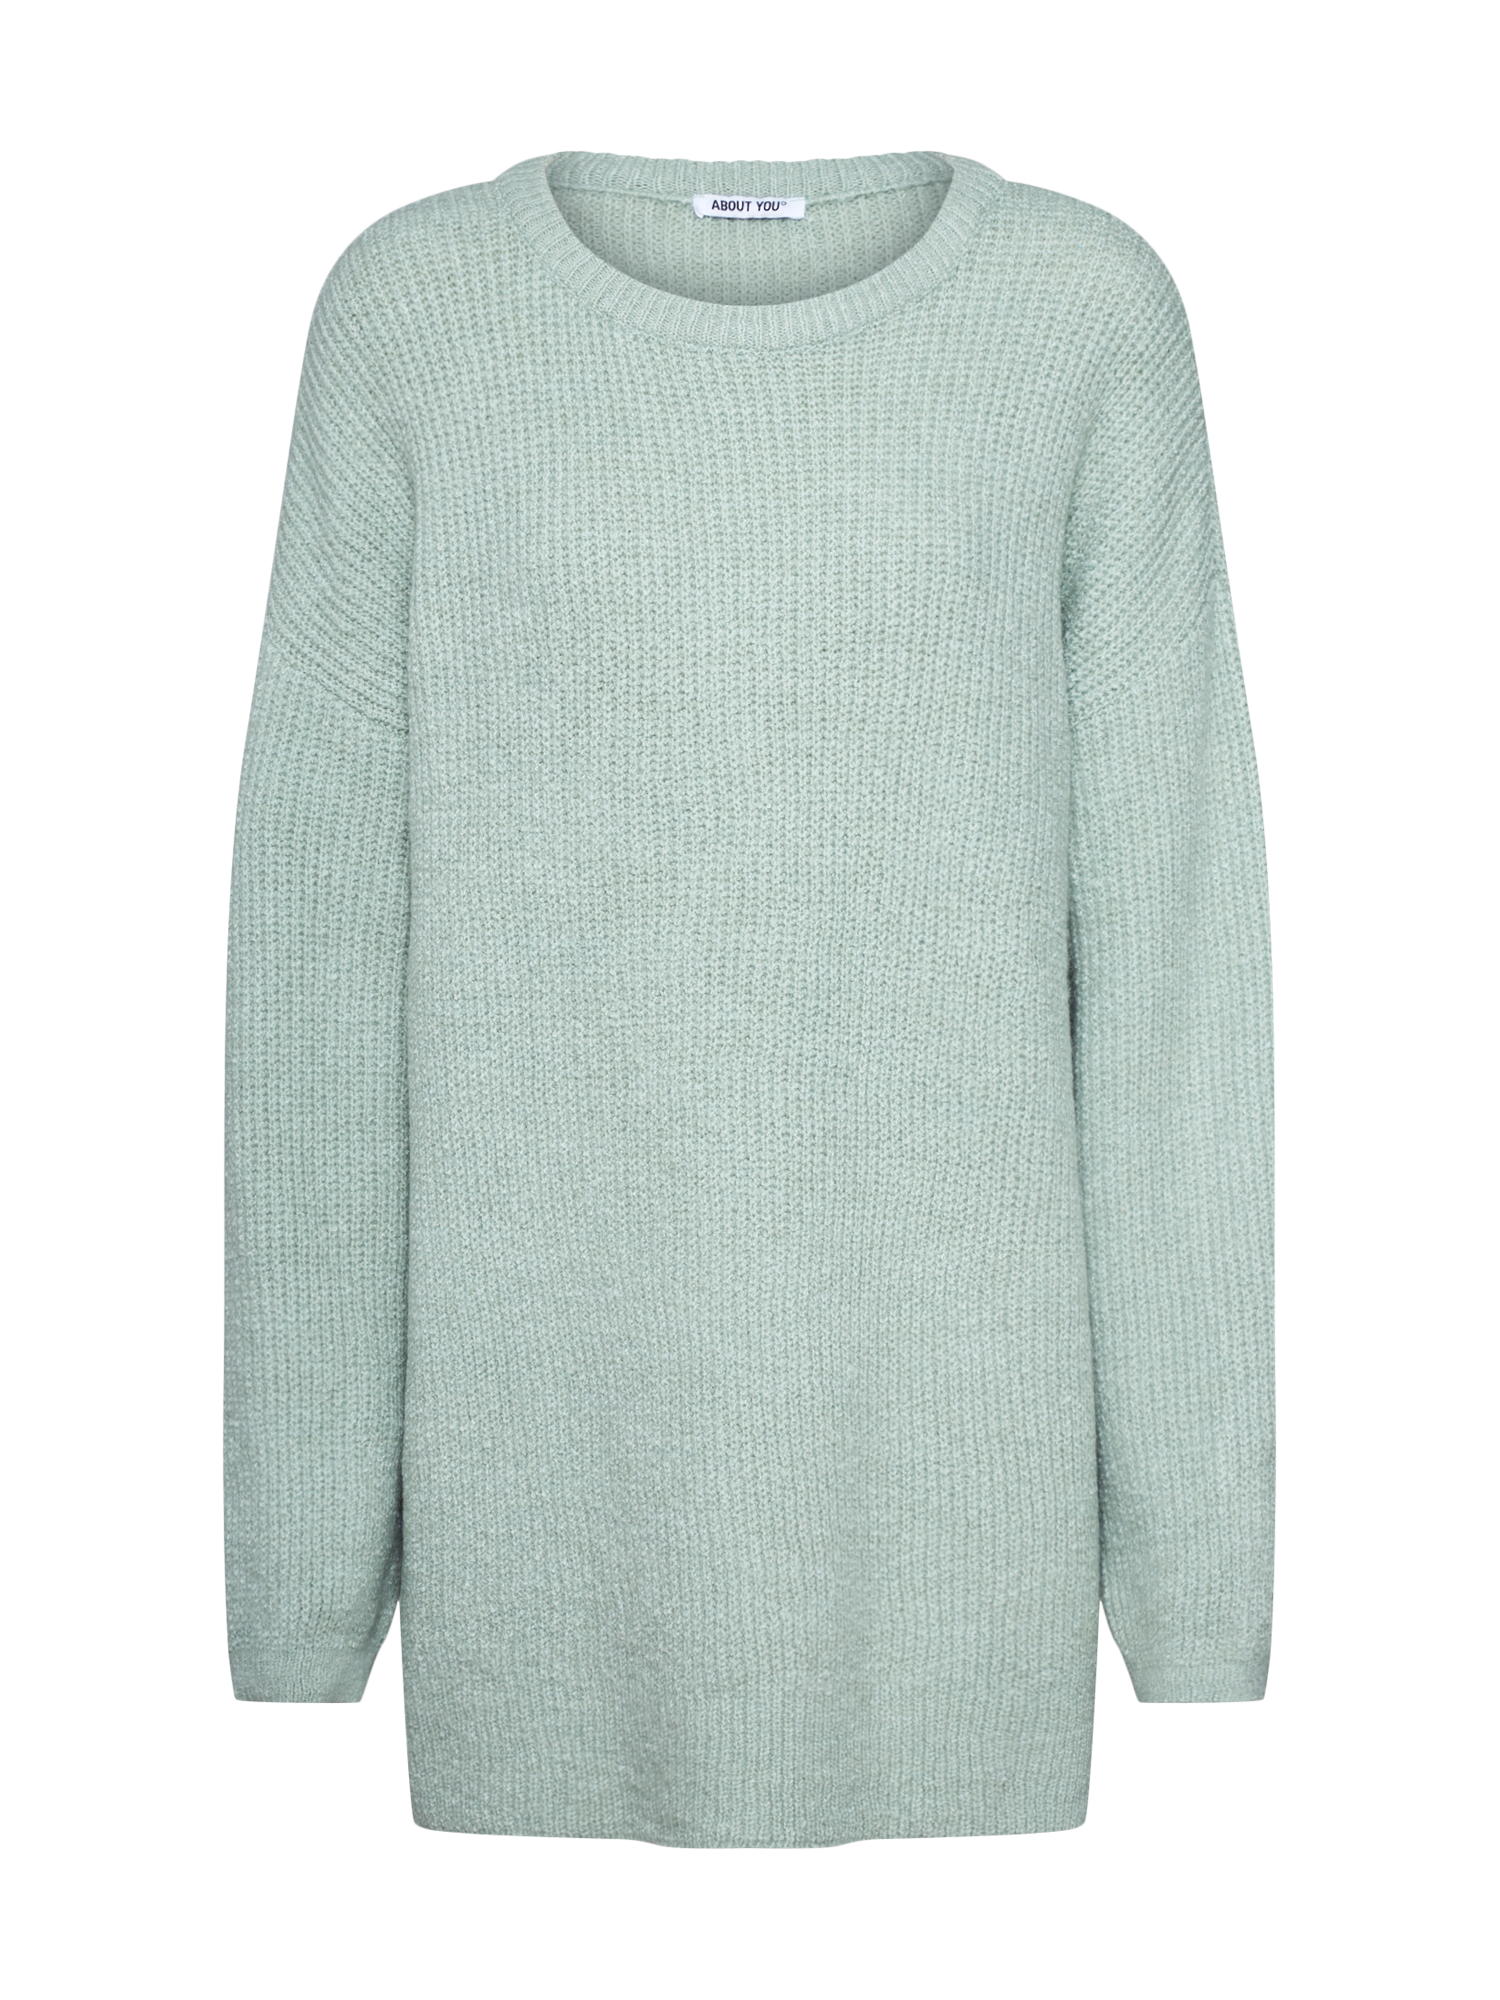 Swetry & dzianina Odzież  Sweter Mina w kolorze Miętowym 